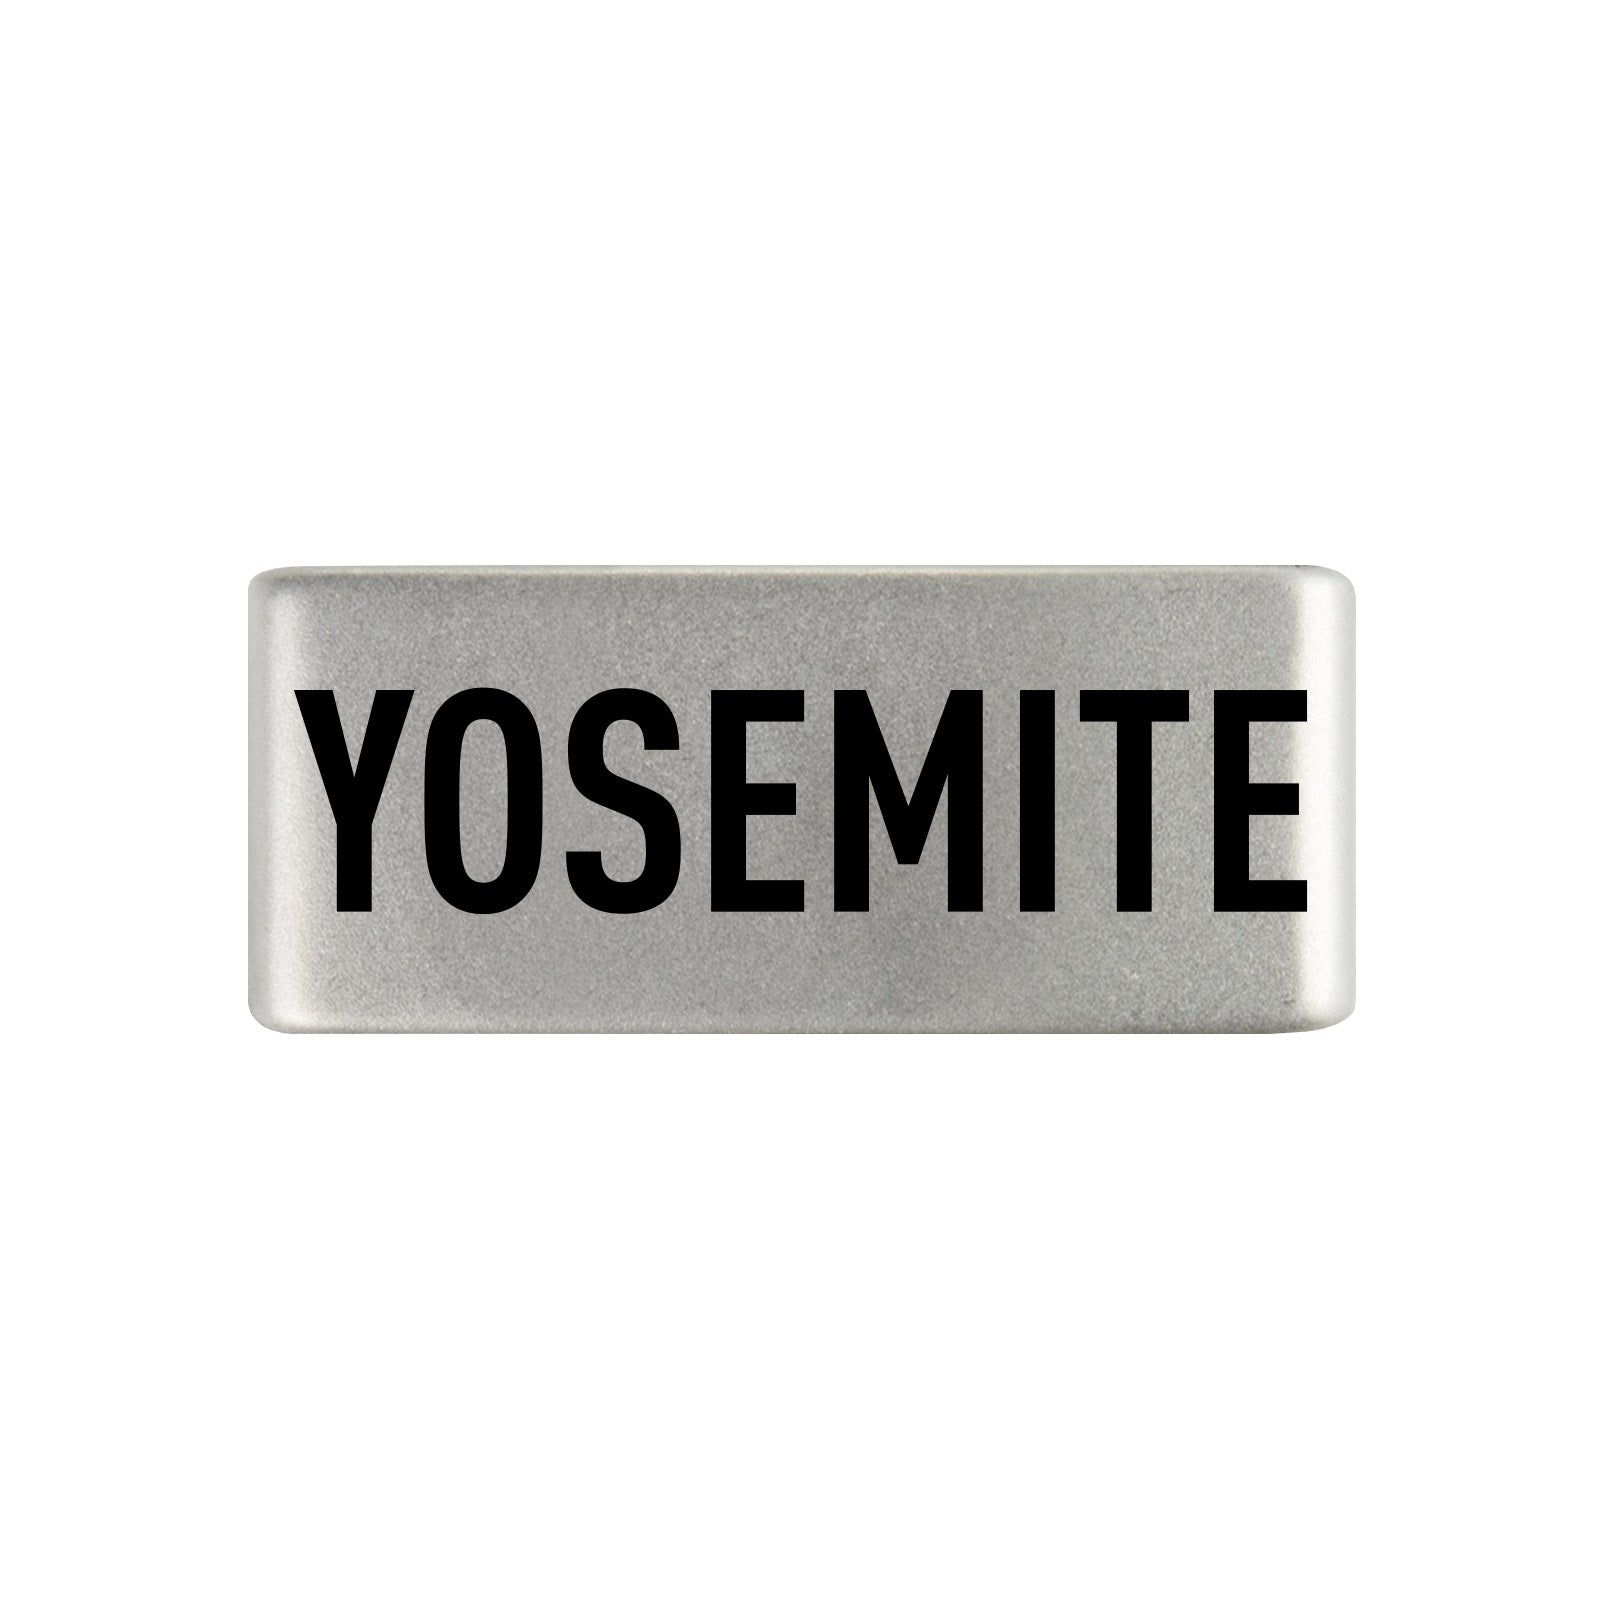 Yosemite Badge Badge 13mm - ROAD iD